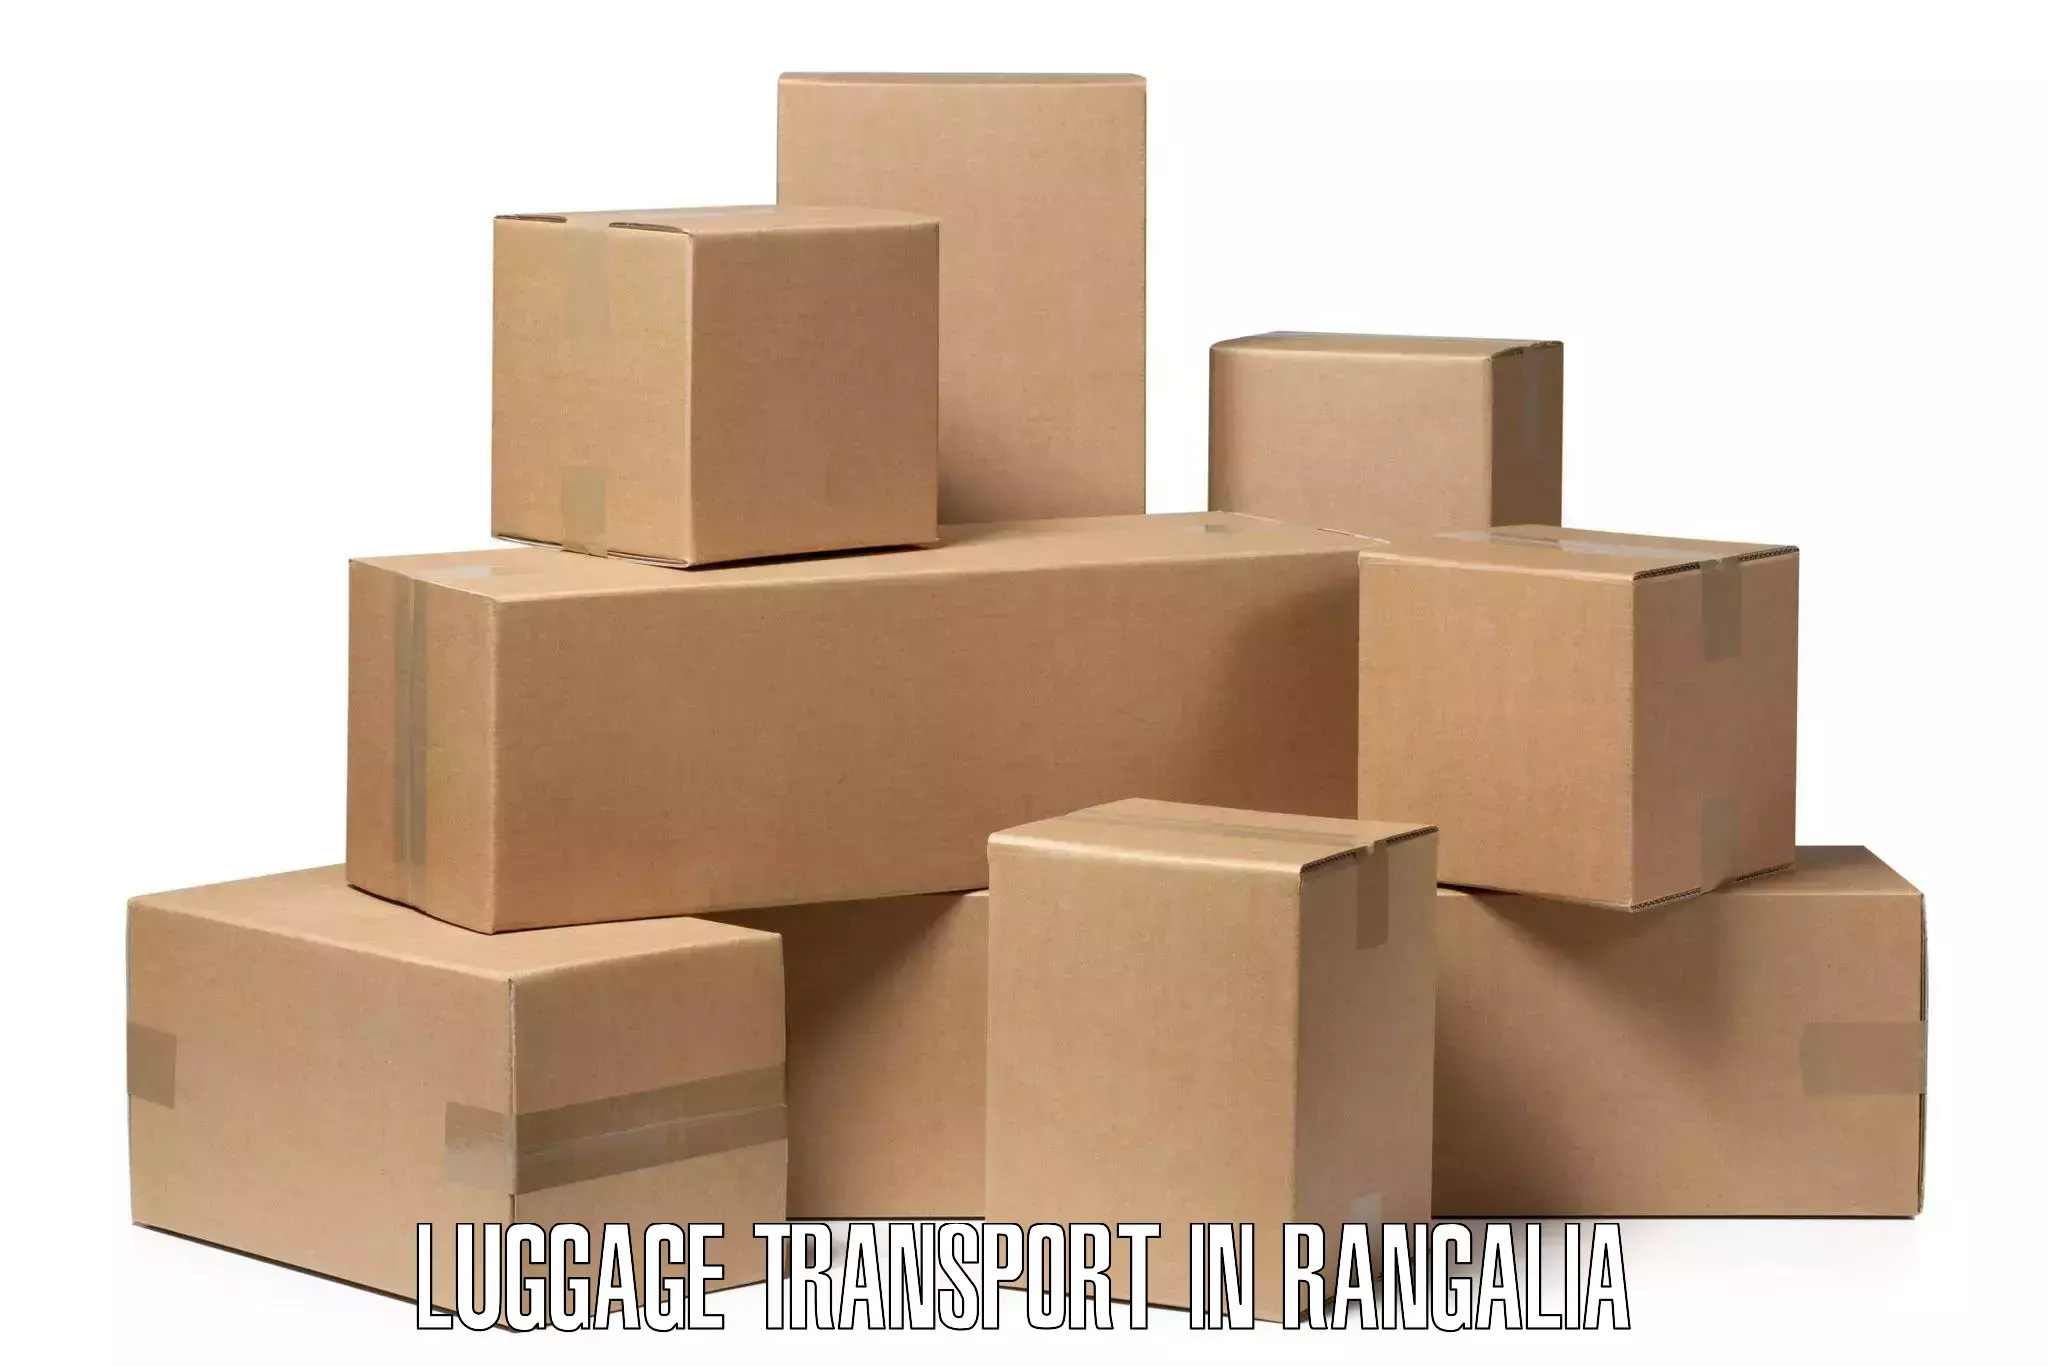 Baggage relocation service in Rangalia